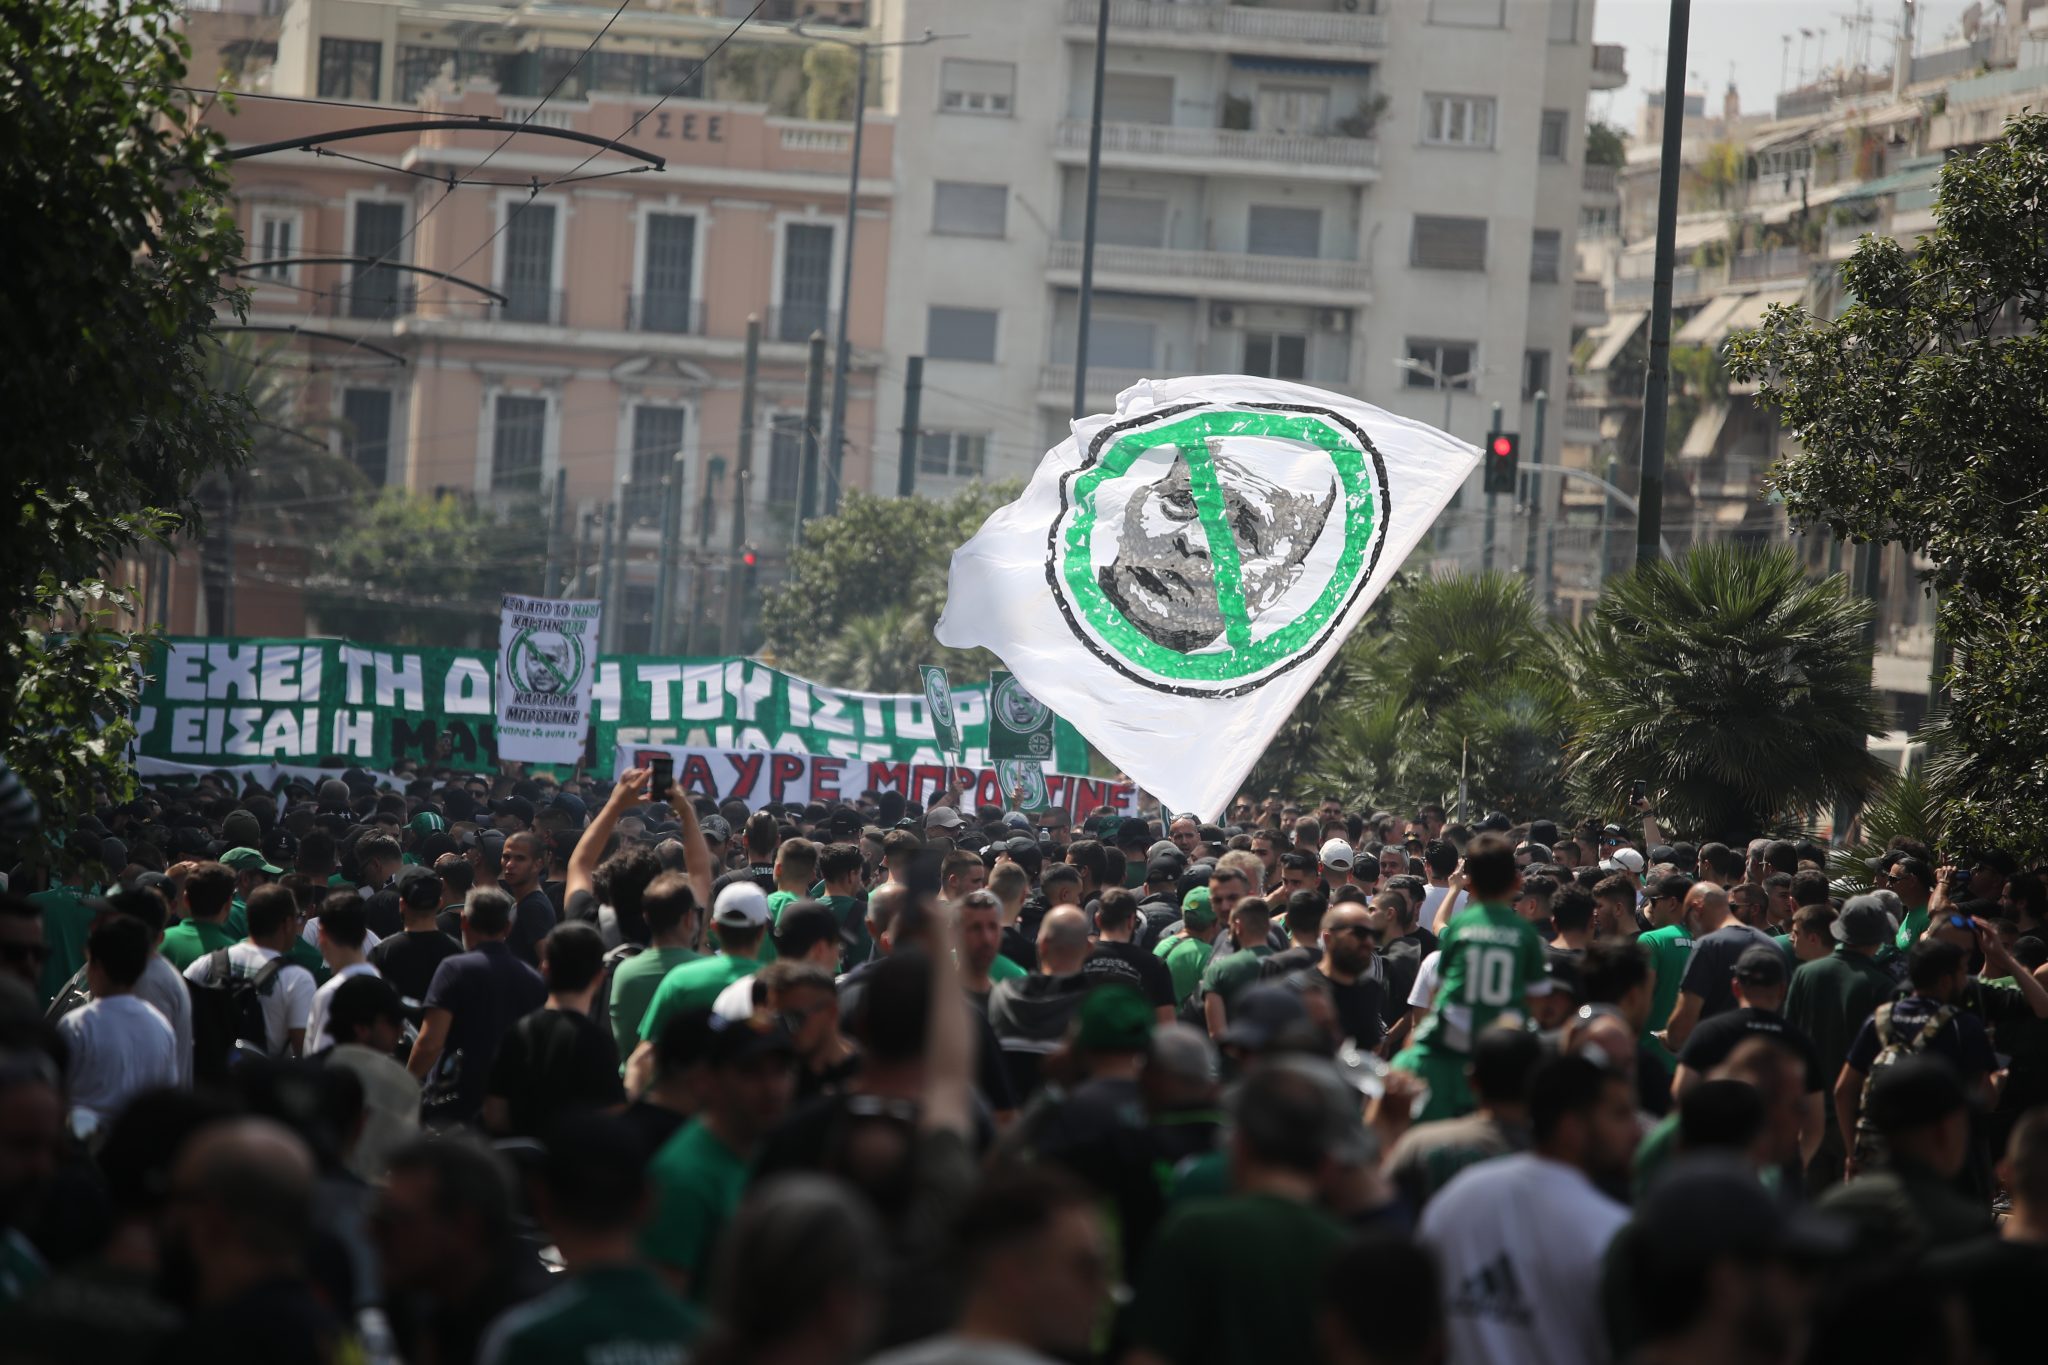 Χιλιάδες οπαδοί του Παναθηναϊκού στο συλλαλητήριο κατά του Αλαφούζου (pics)